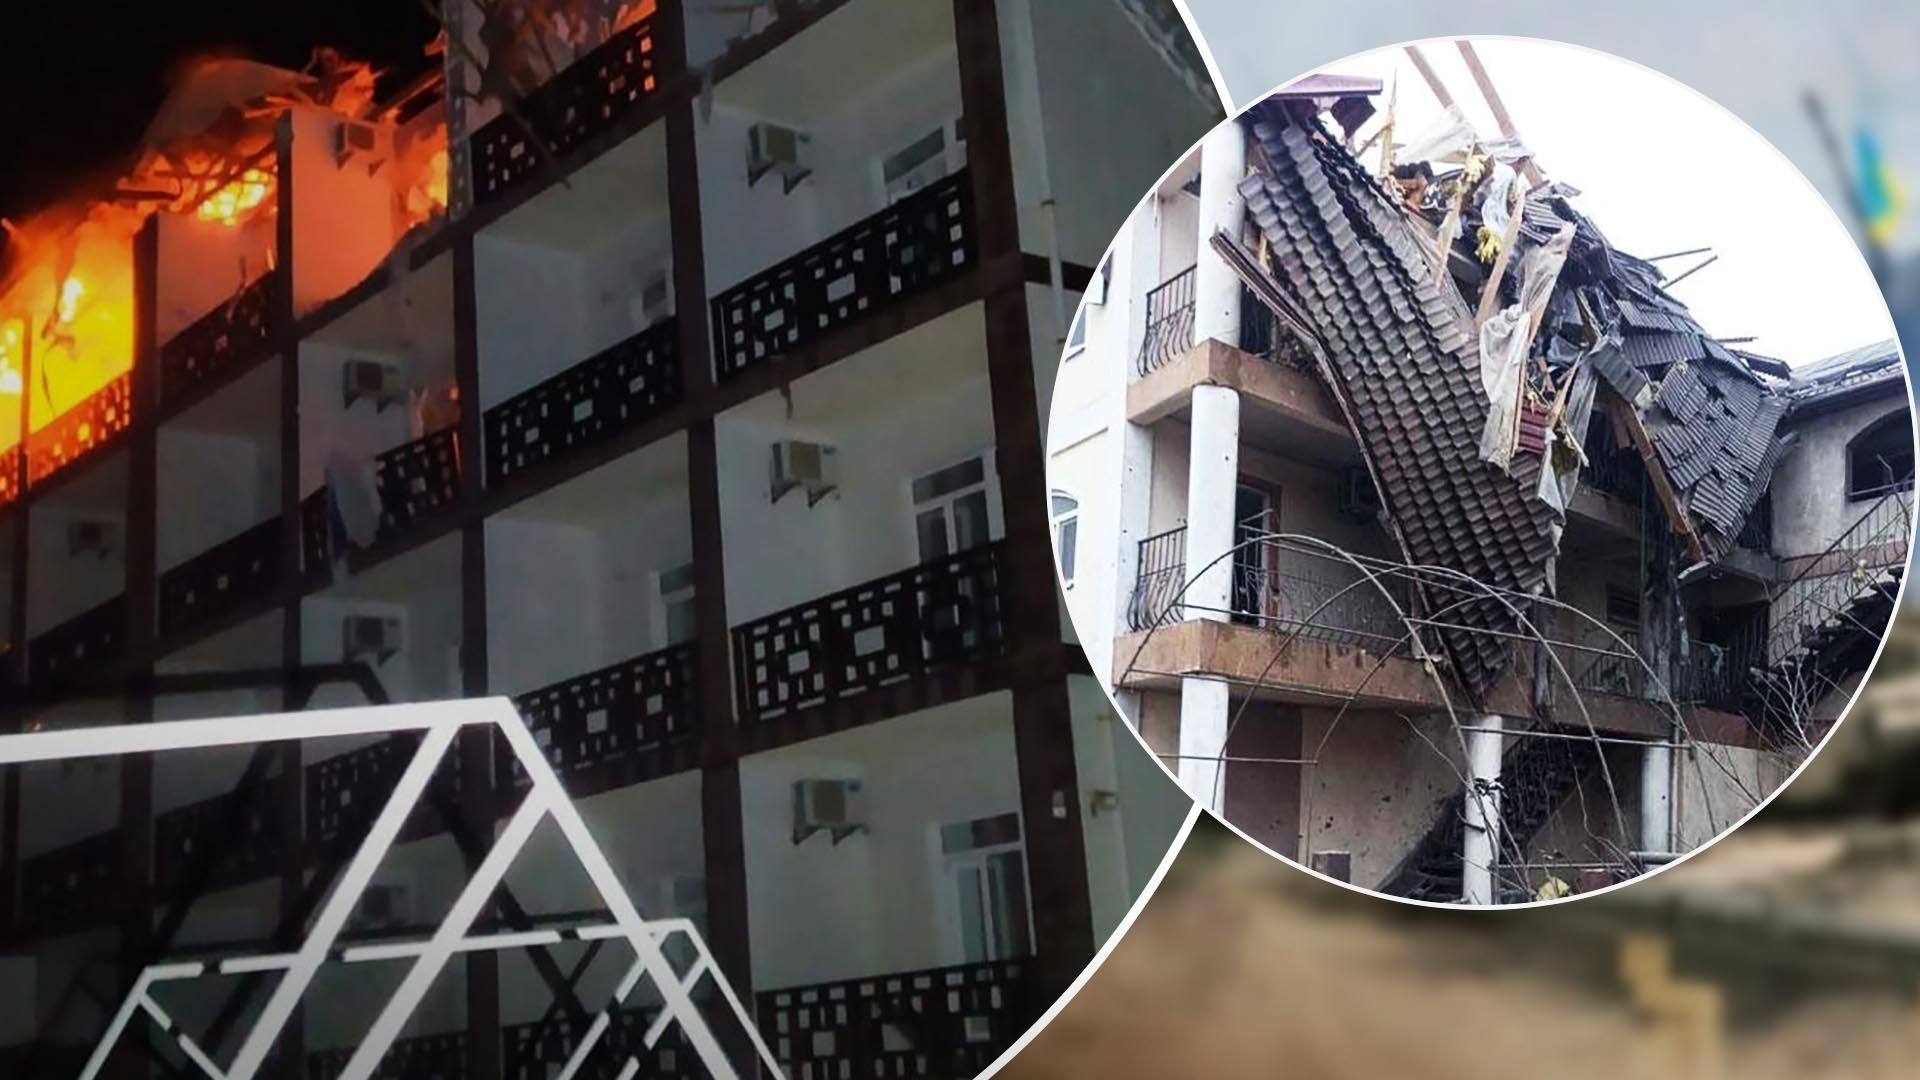 В Железном Порту взорвалась гостиница с работниками ФСБ - видео